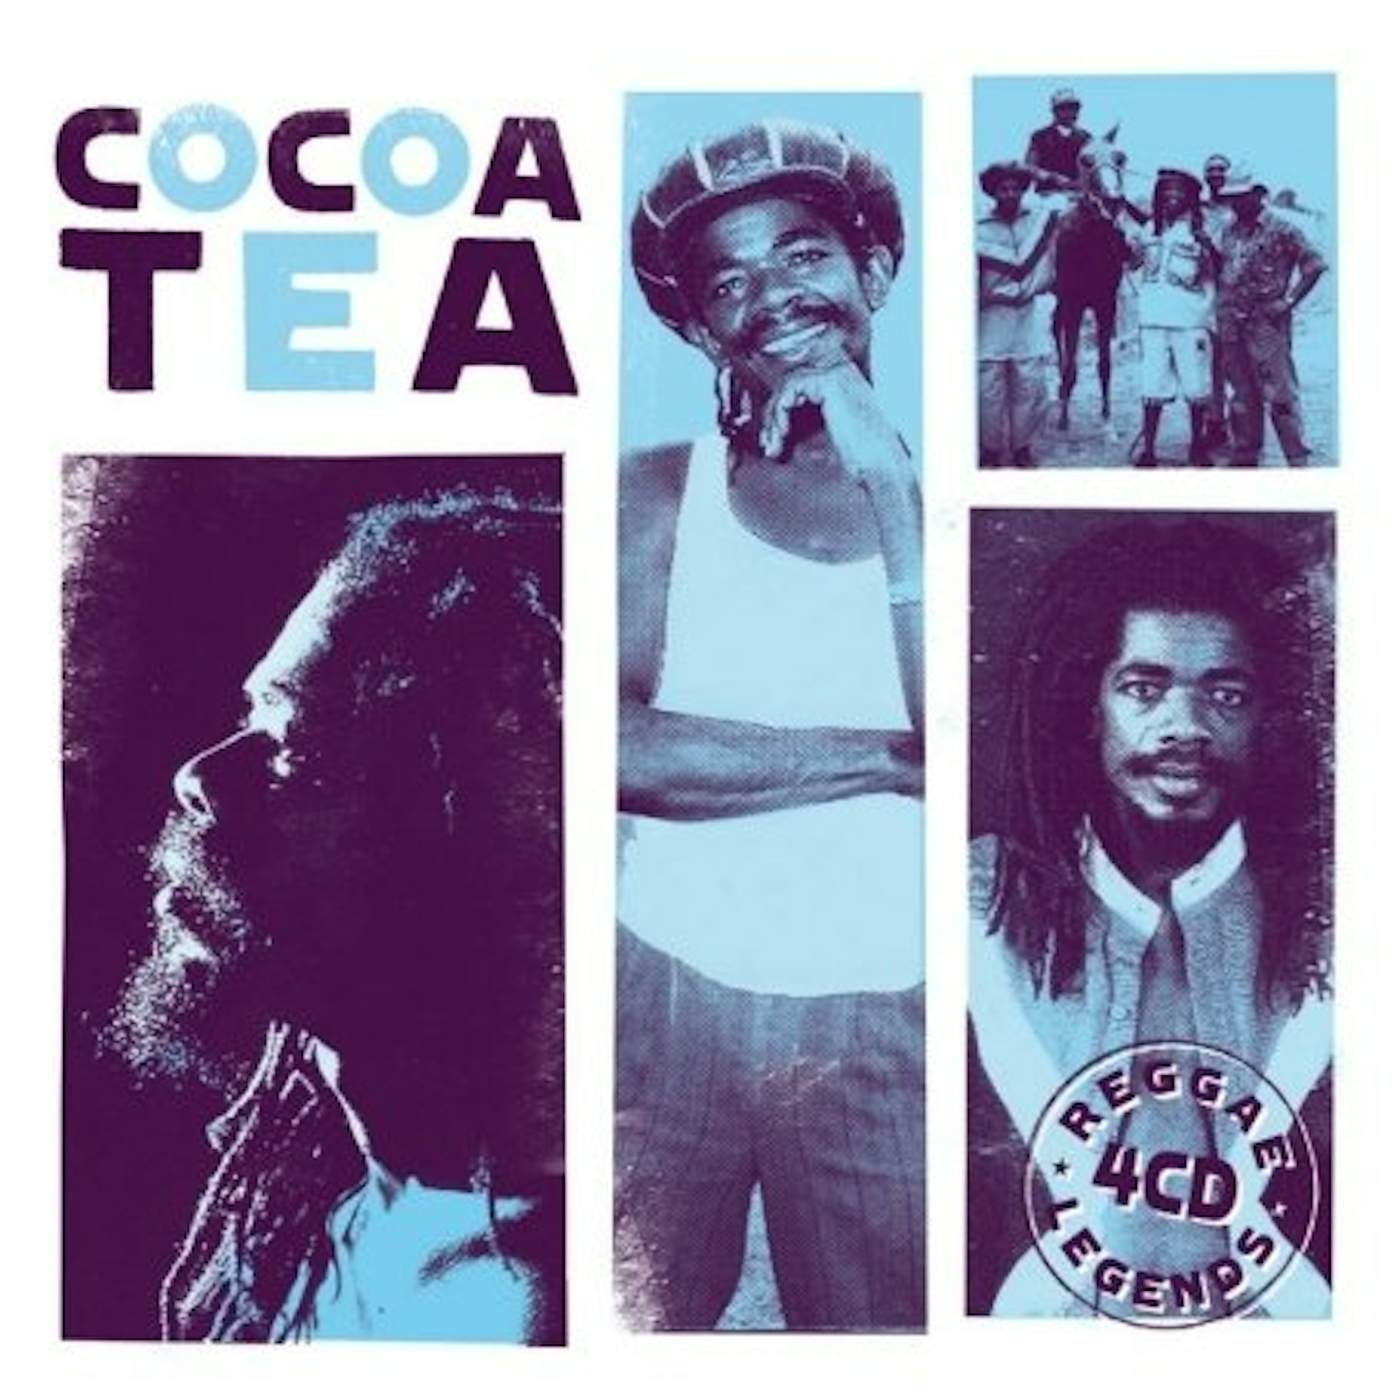 Cocoa Tea REGGAE LEGENDS CD